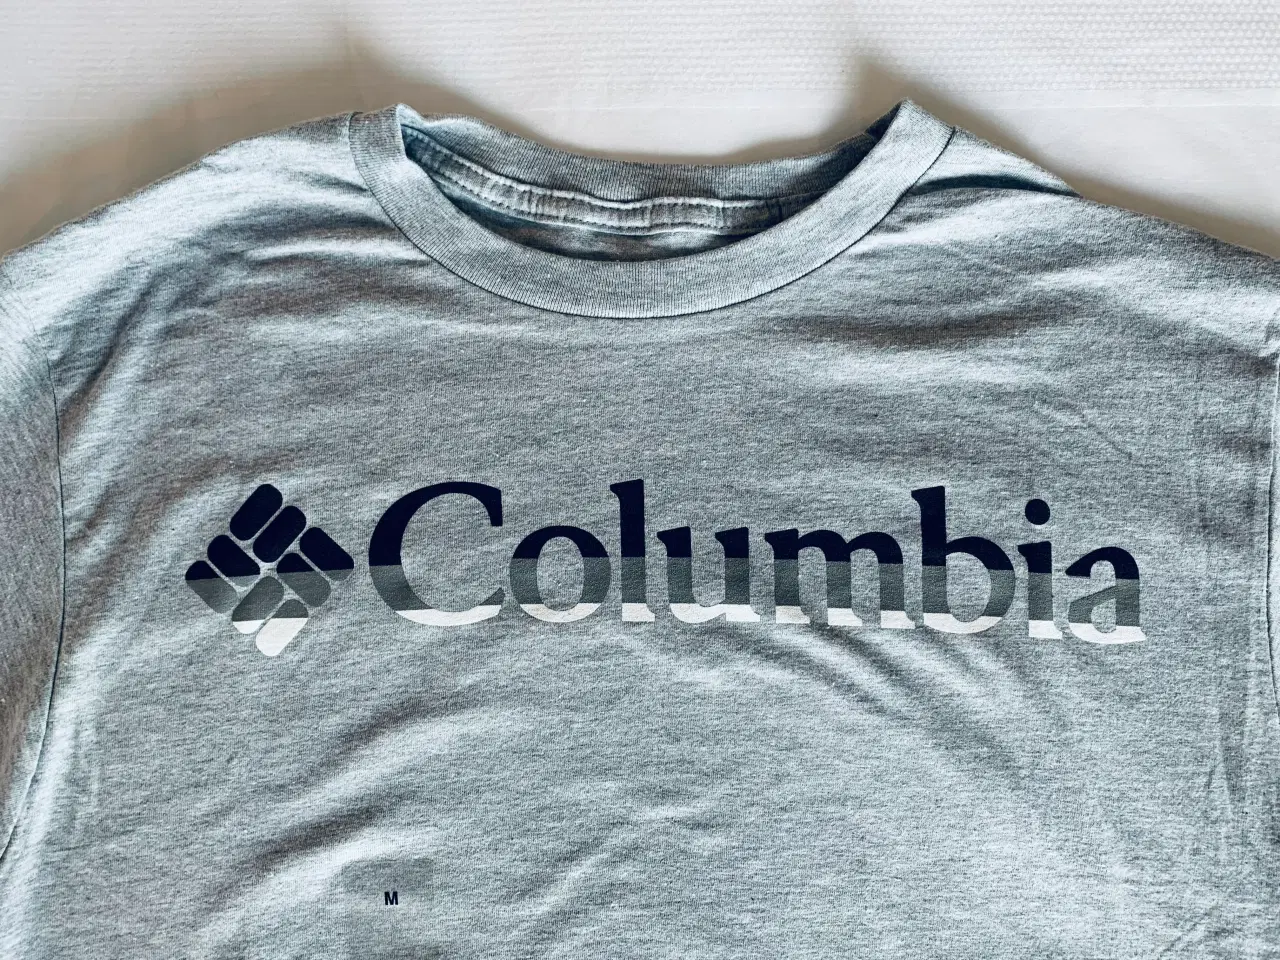 Billede 1 - Ubrugt Columbia t-shirt m. label (str. M)